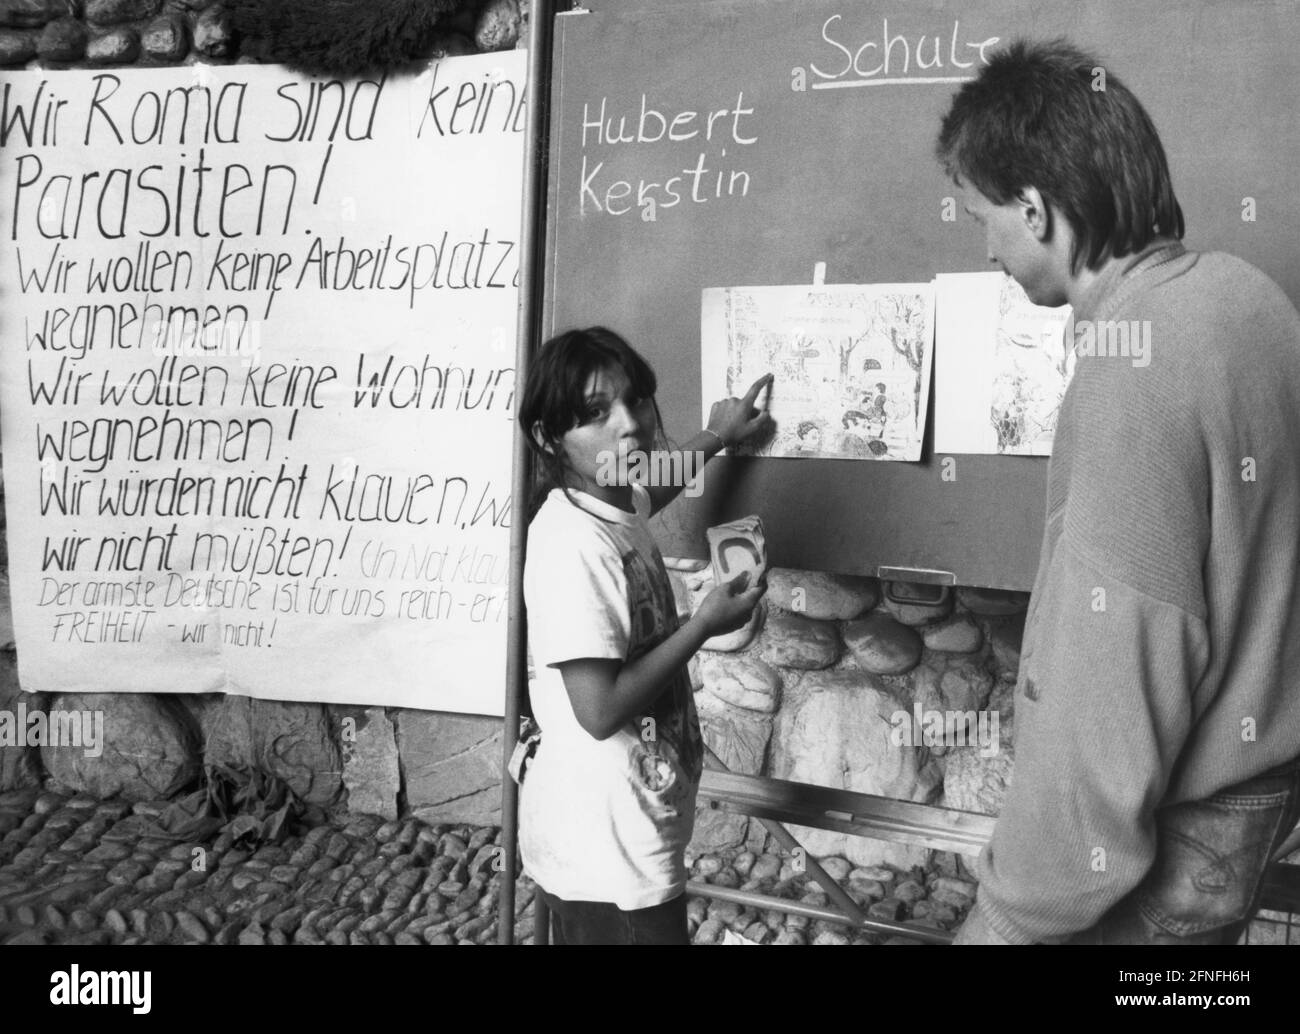 Una giovane Rom riceve lezioni di tedesco, dietro di lei un poster di accettazione pubblicitaria. Temendo la deportazione nella zona di guerra della Jugoslavia, le famiglie si erano ritirate nell'area delle due cappelle commemorative sul terreno del campo di concentramento di Dachau, dove erano protette dall'asilo della chiesa. [traduzione automatizzata] Foto Stock